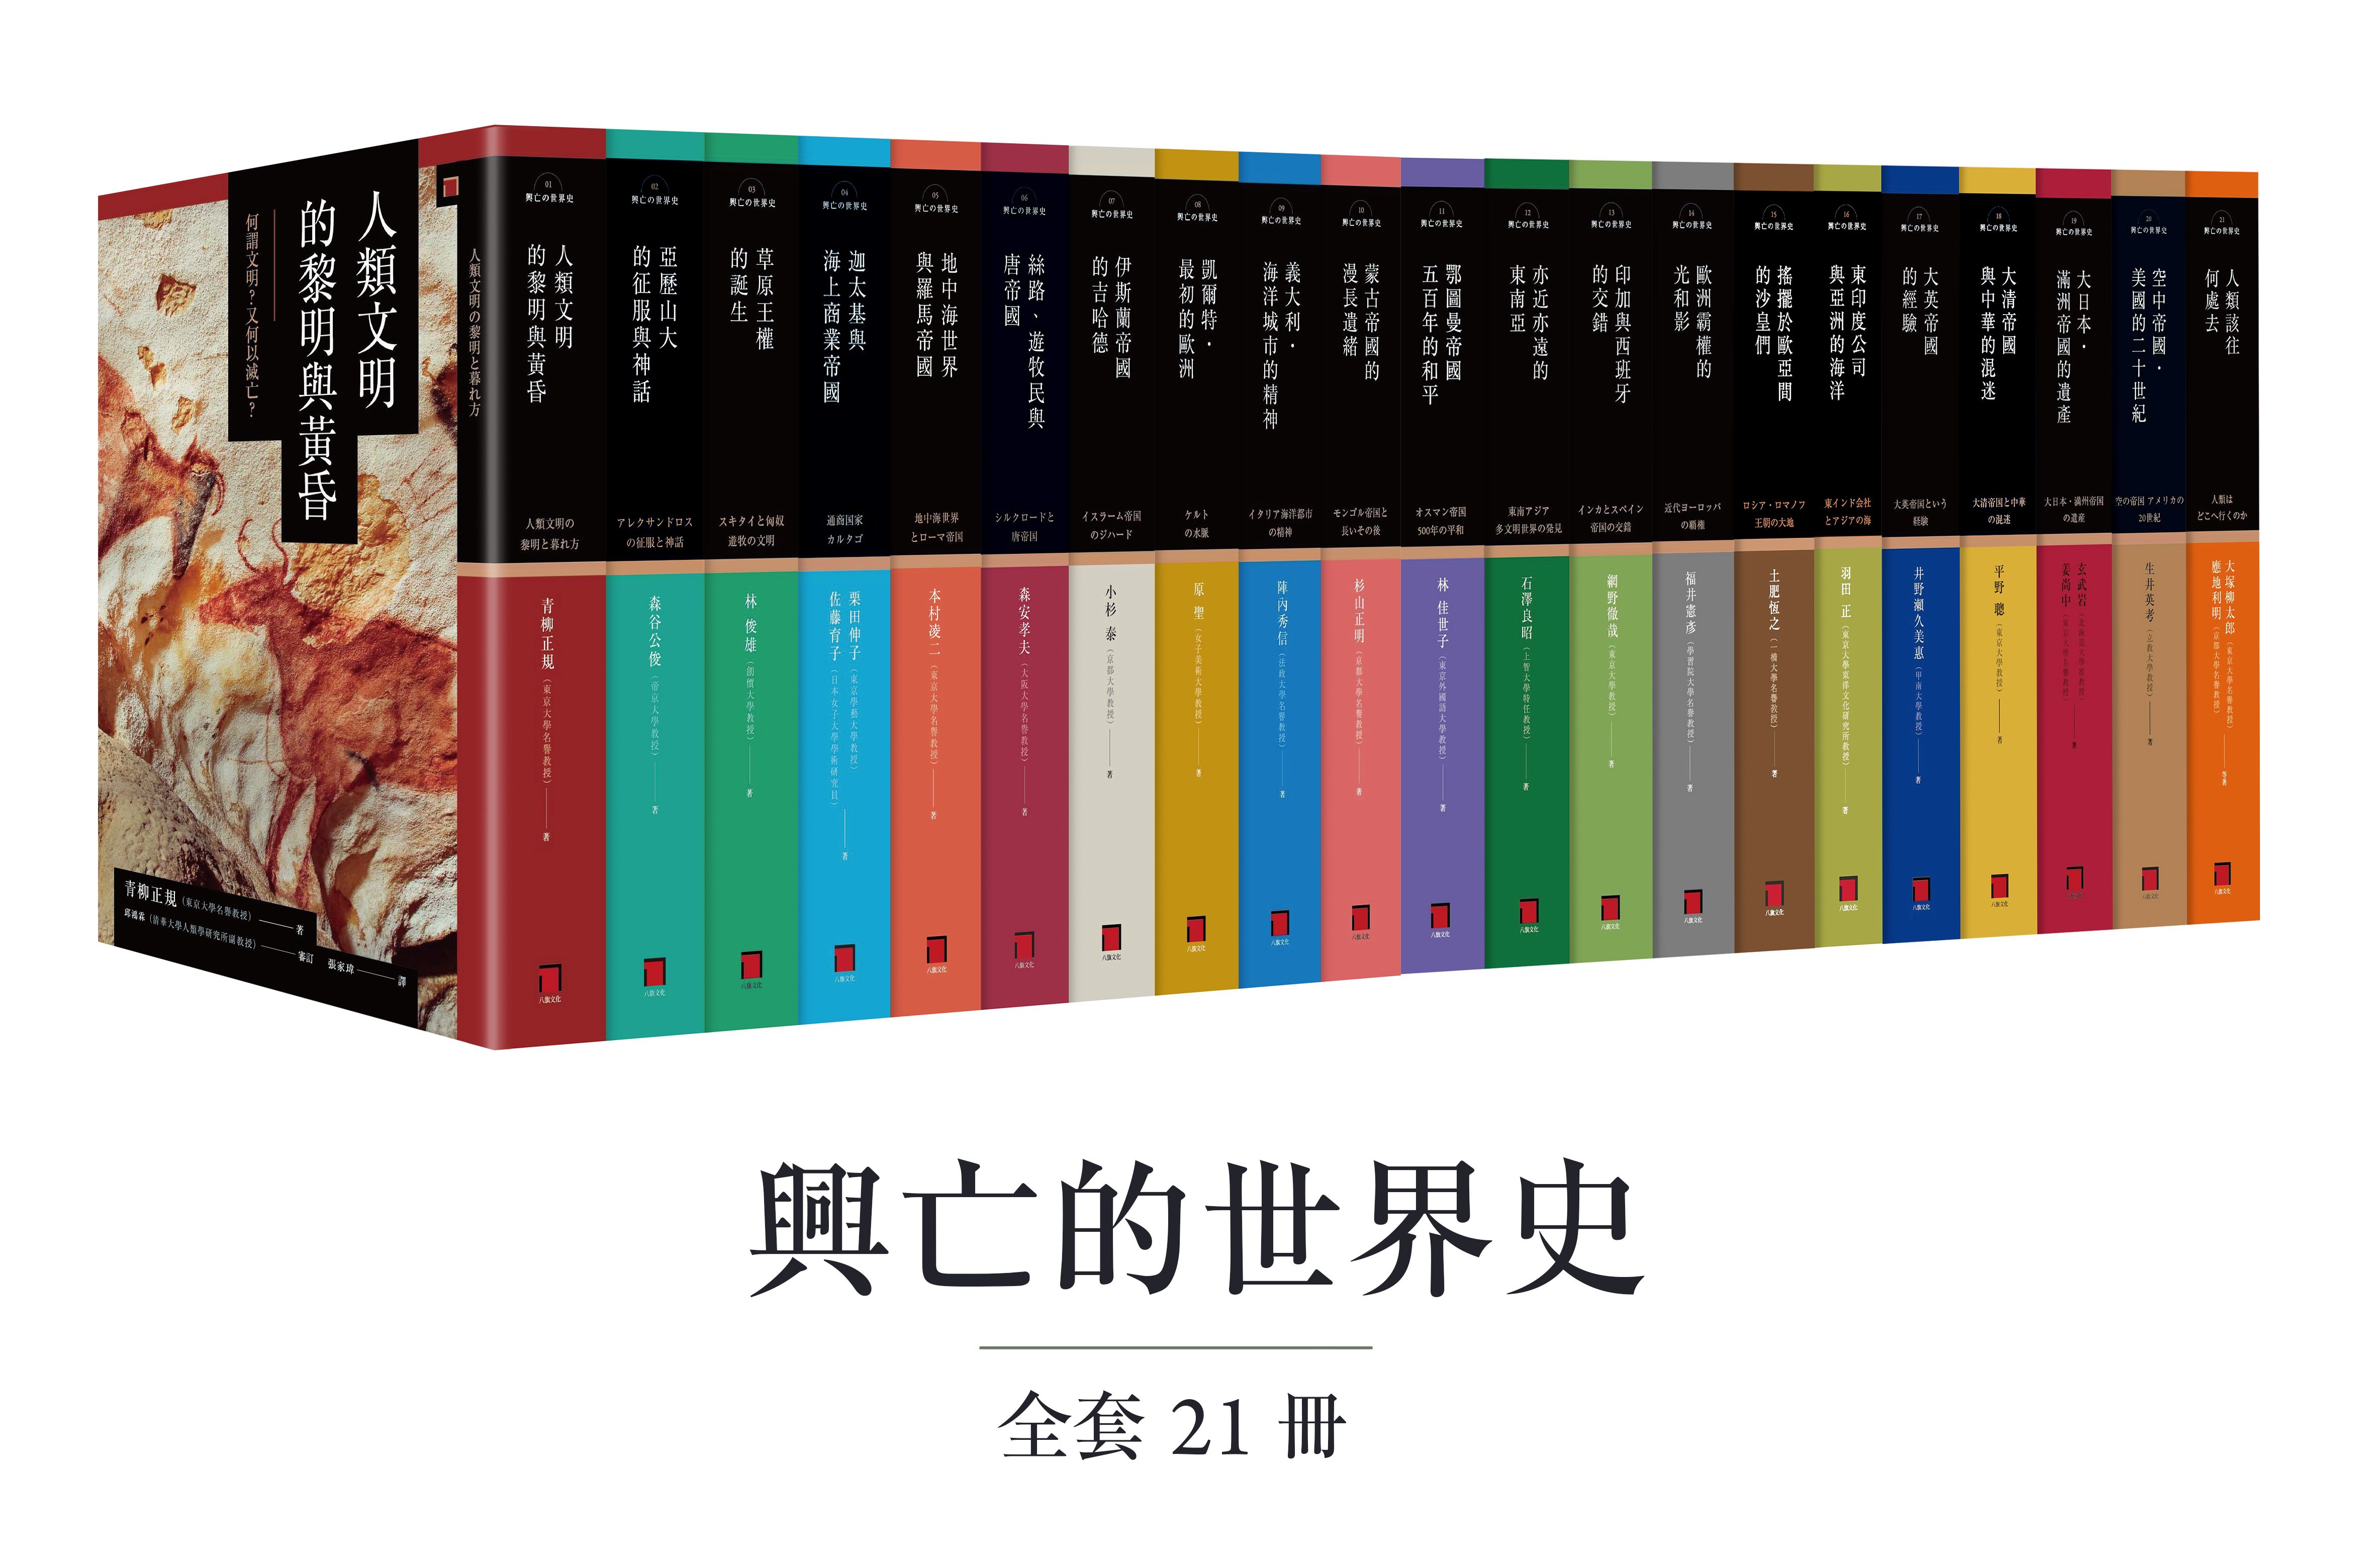 興亡的世界史 全套21卷 讀書共和國網路書店